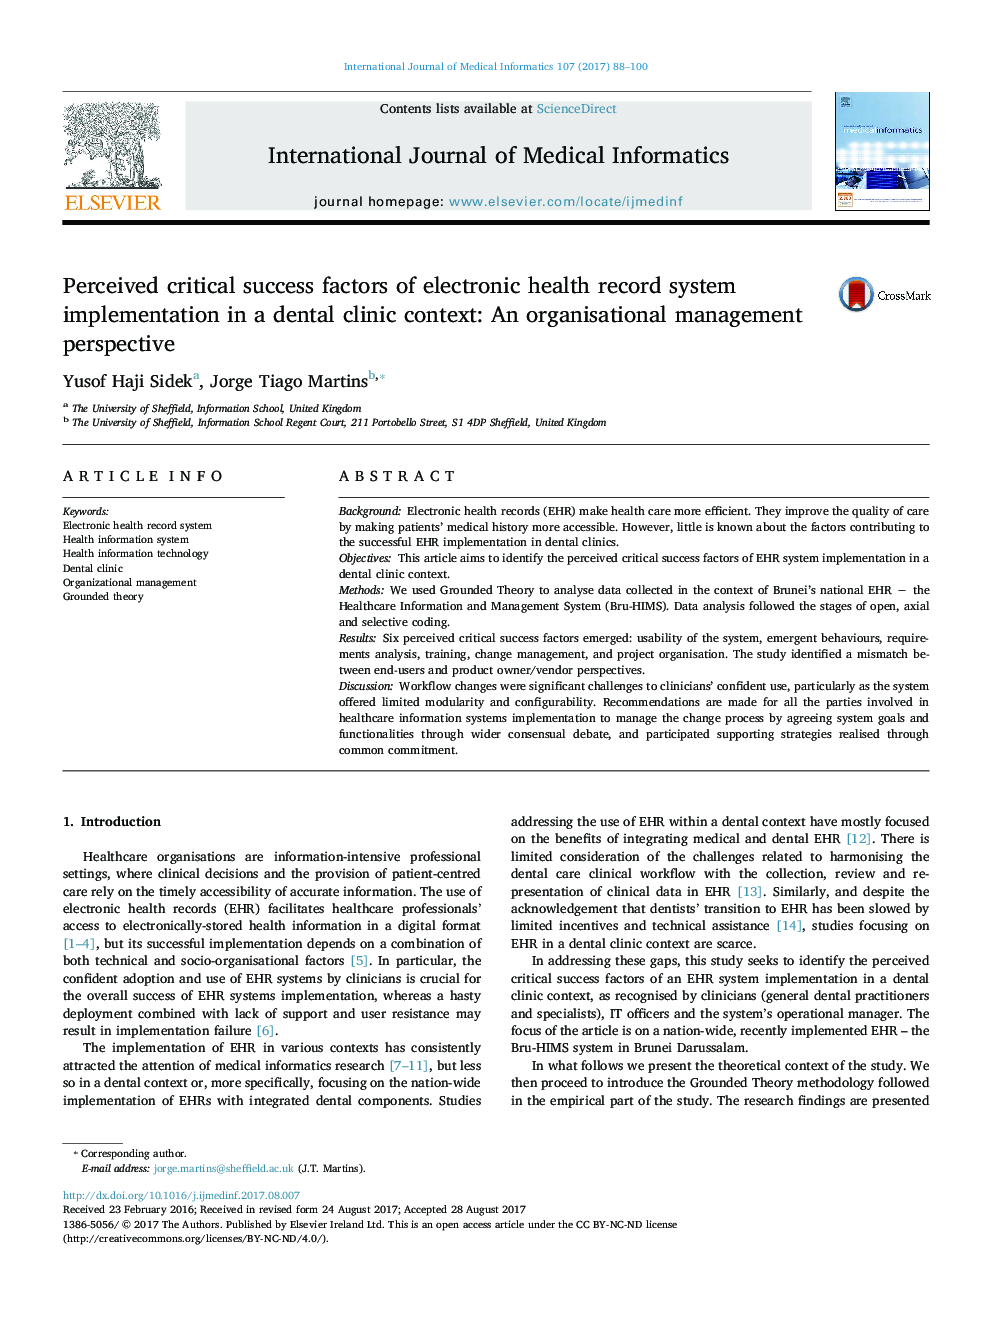 عوامل موفقیت بحرانی قابل قبول پیاده سازی سیستم ثبت الکترونیکی سلامت در یک کلینیک دندانپزشکی: دیدگاه مدیریت سازمانی 